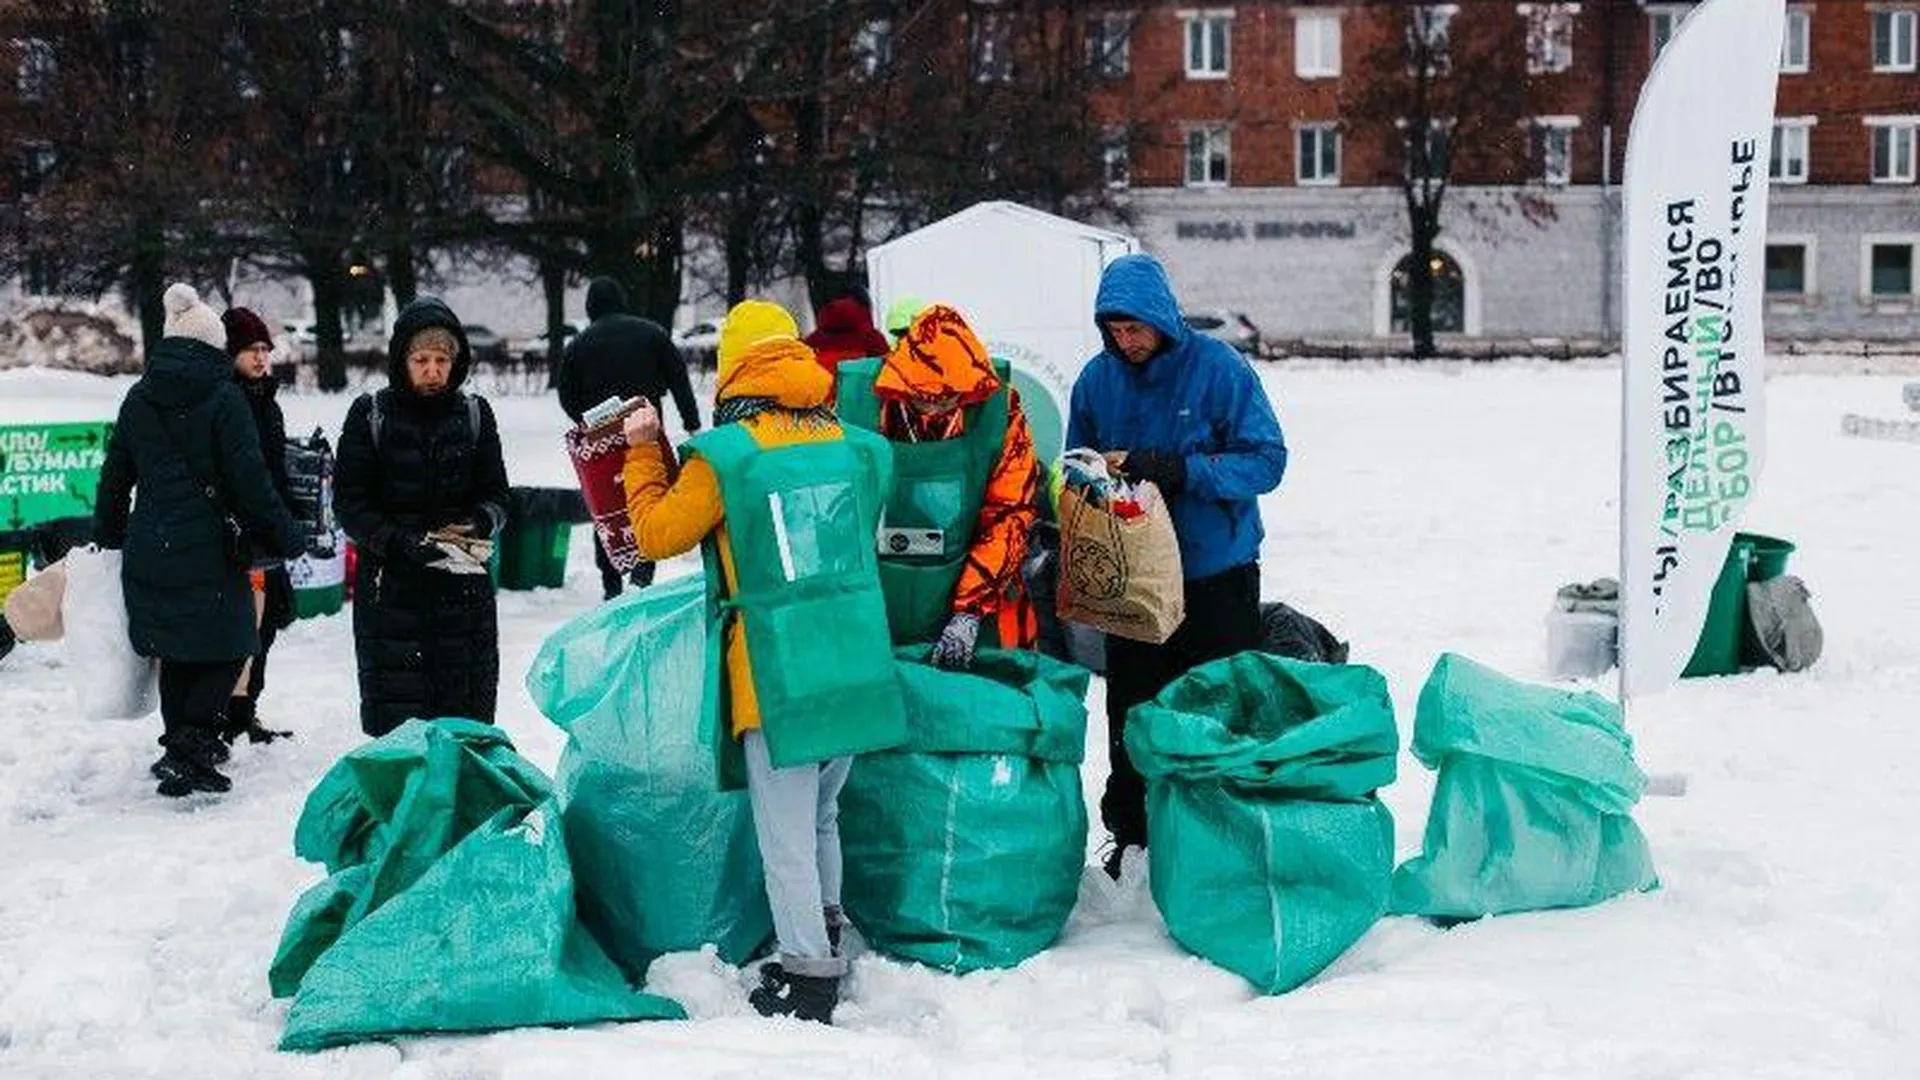 Более 7 тысяч вещей обрели вторую жизнь в Подмосковье благодаря акции «Зеленая суббота»